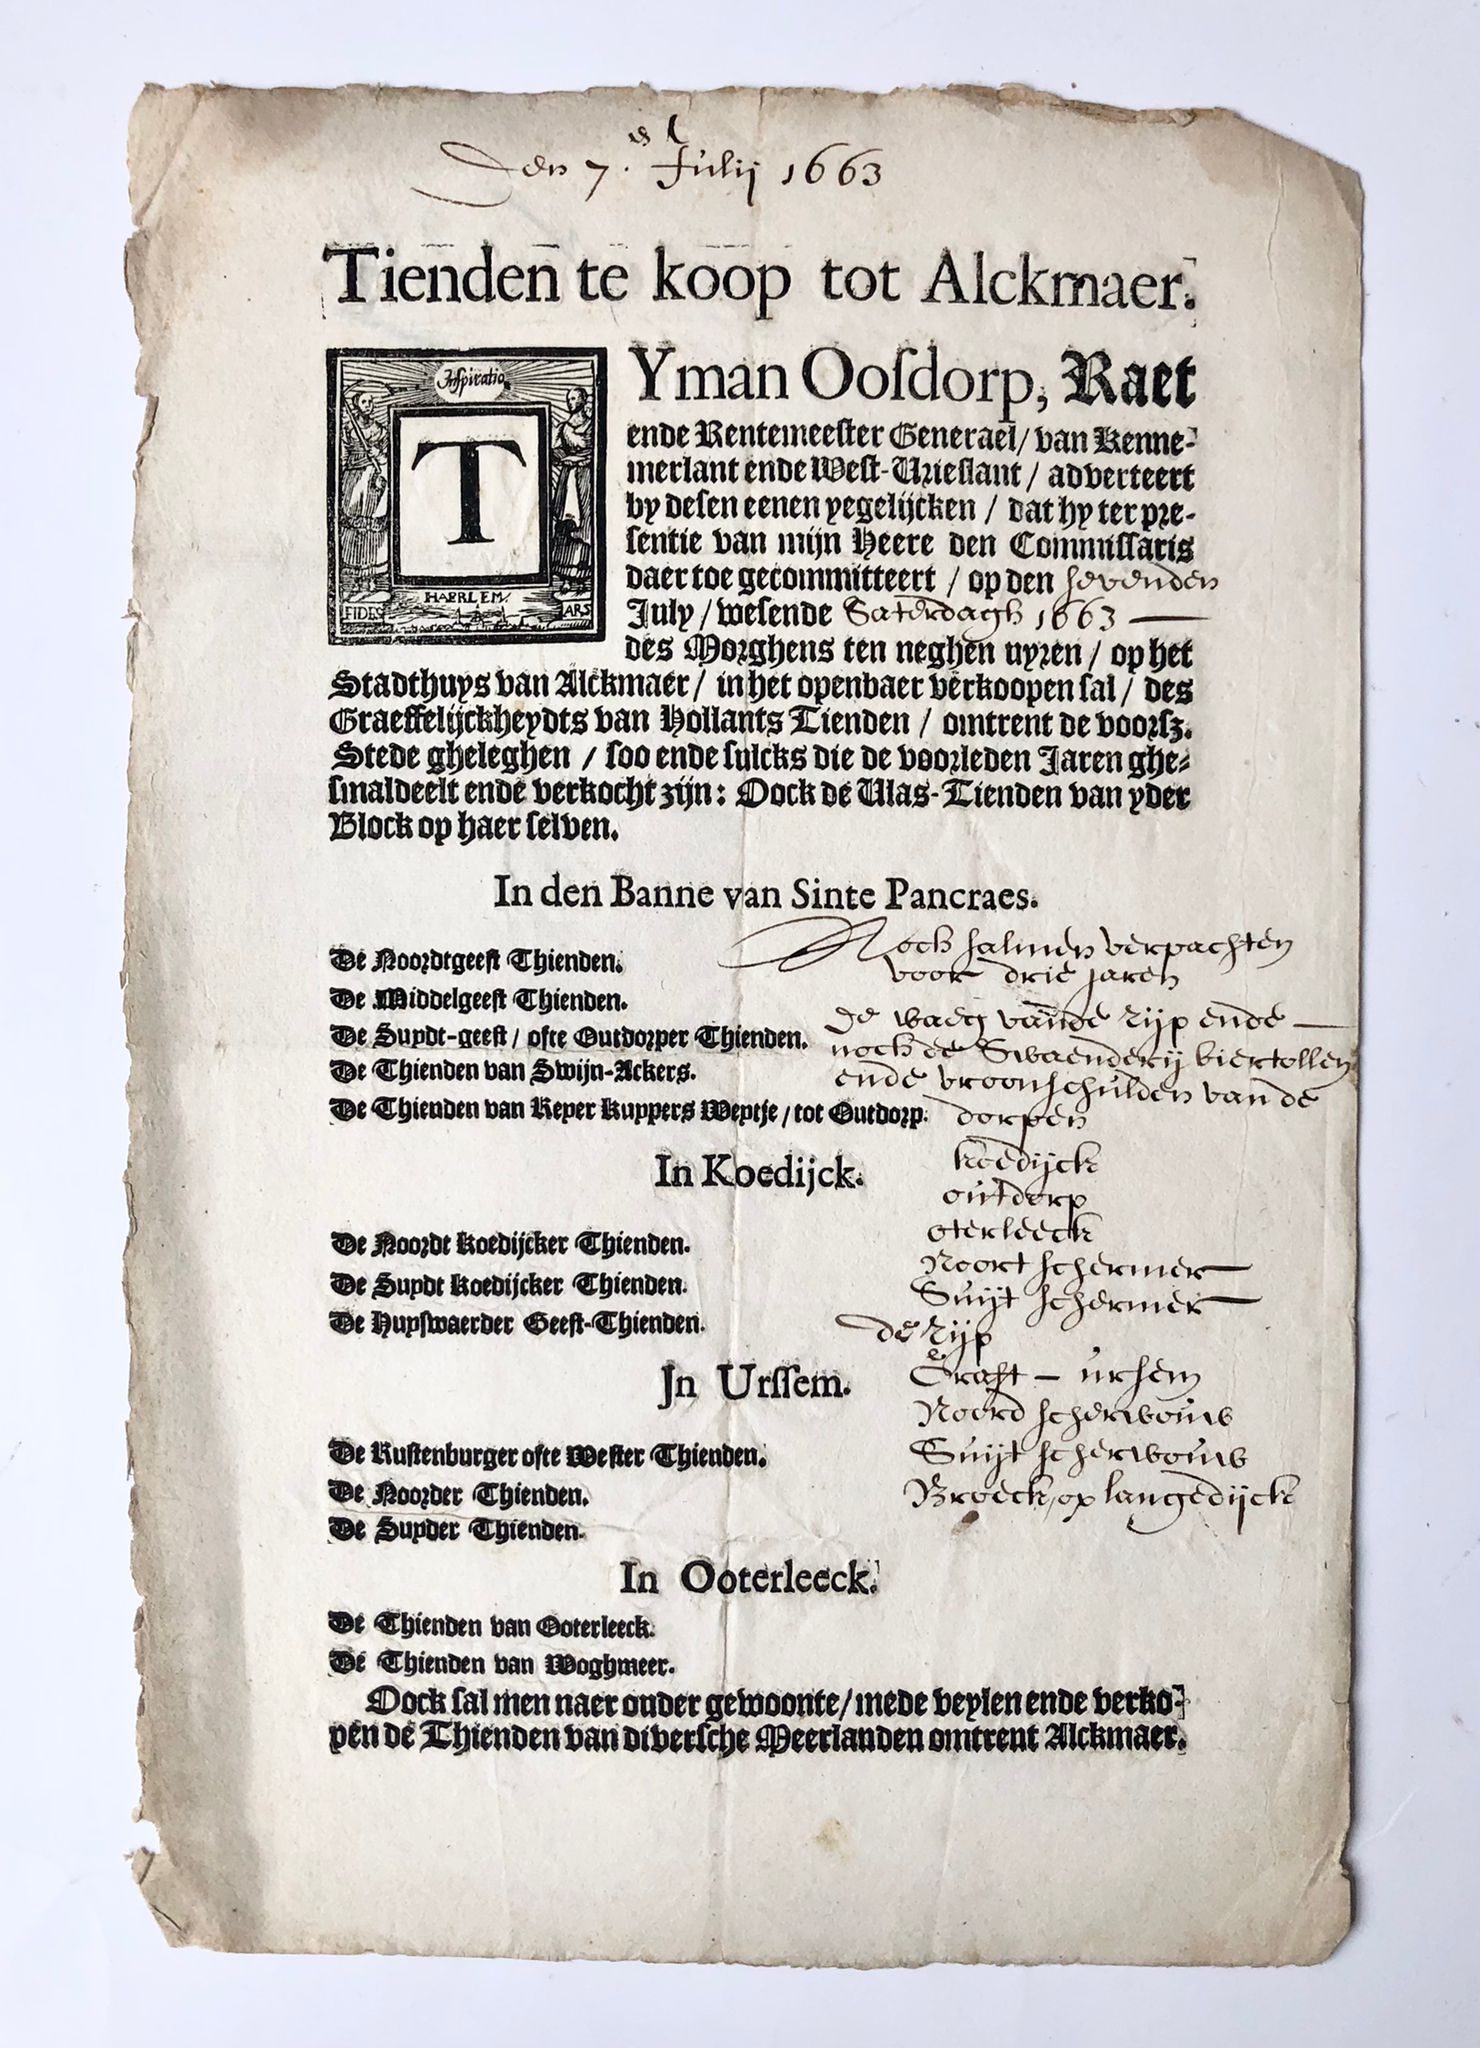 [Printed publication with handwritten additions, 1663] Notice (aanplakbiljet) 'Tienden te koop tot Alckmaer' 7-7-1663, plano, 1 page printed and handwritten additions.